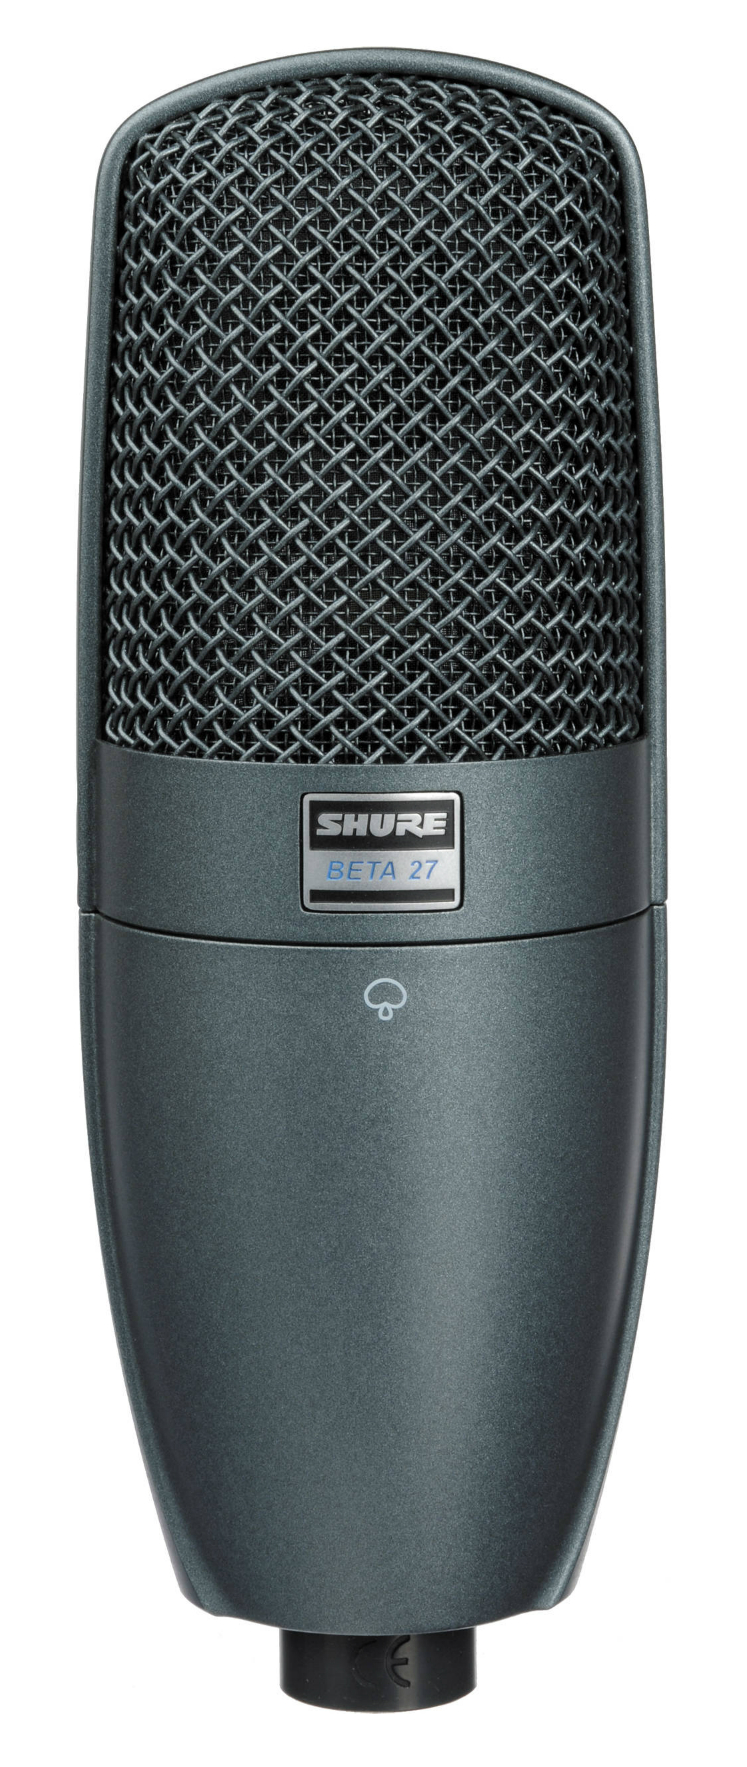 Картинка Суперкардиоидный инструментальный микрофон Shure BETA 27 - лучшая цена, доставка по России